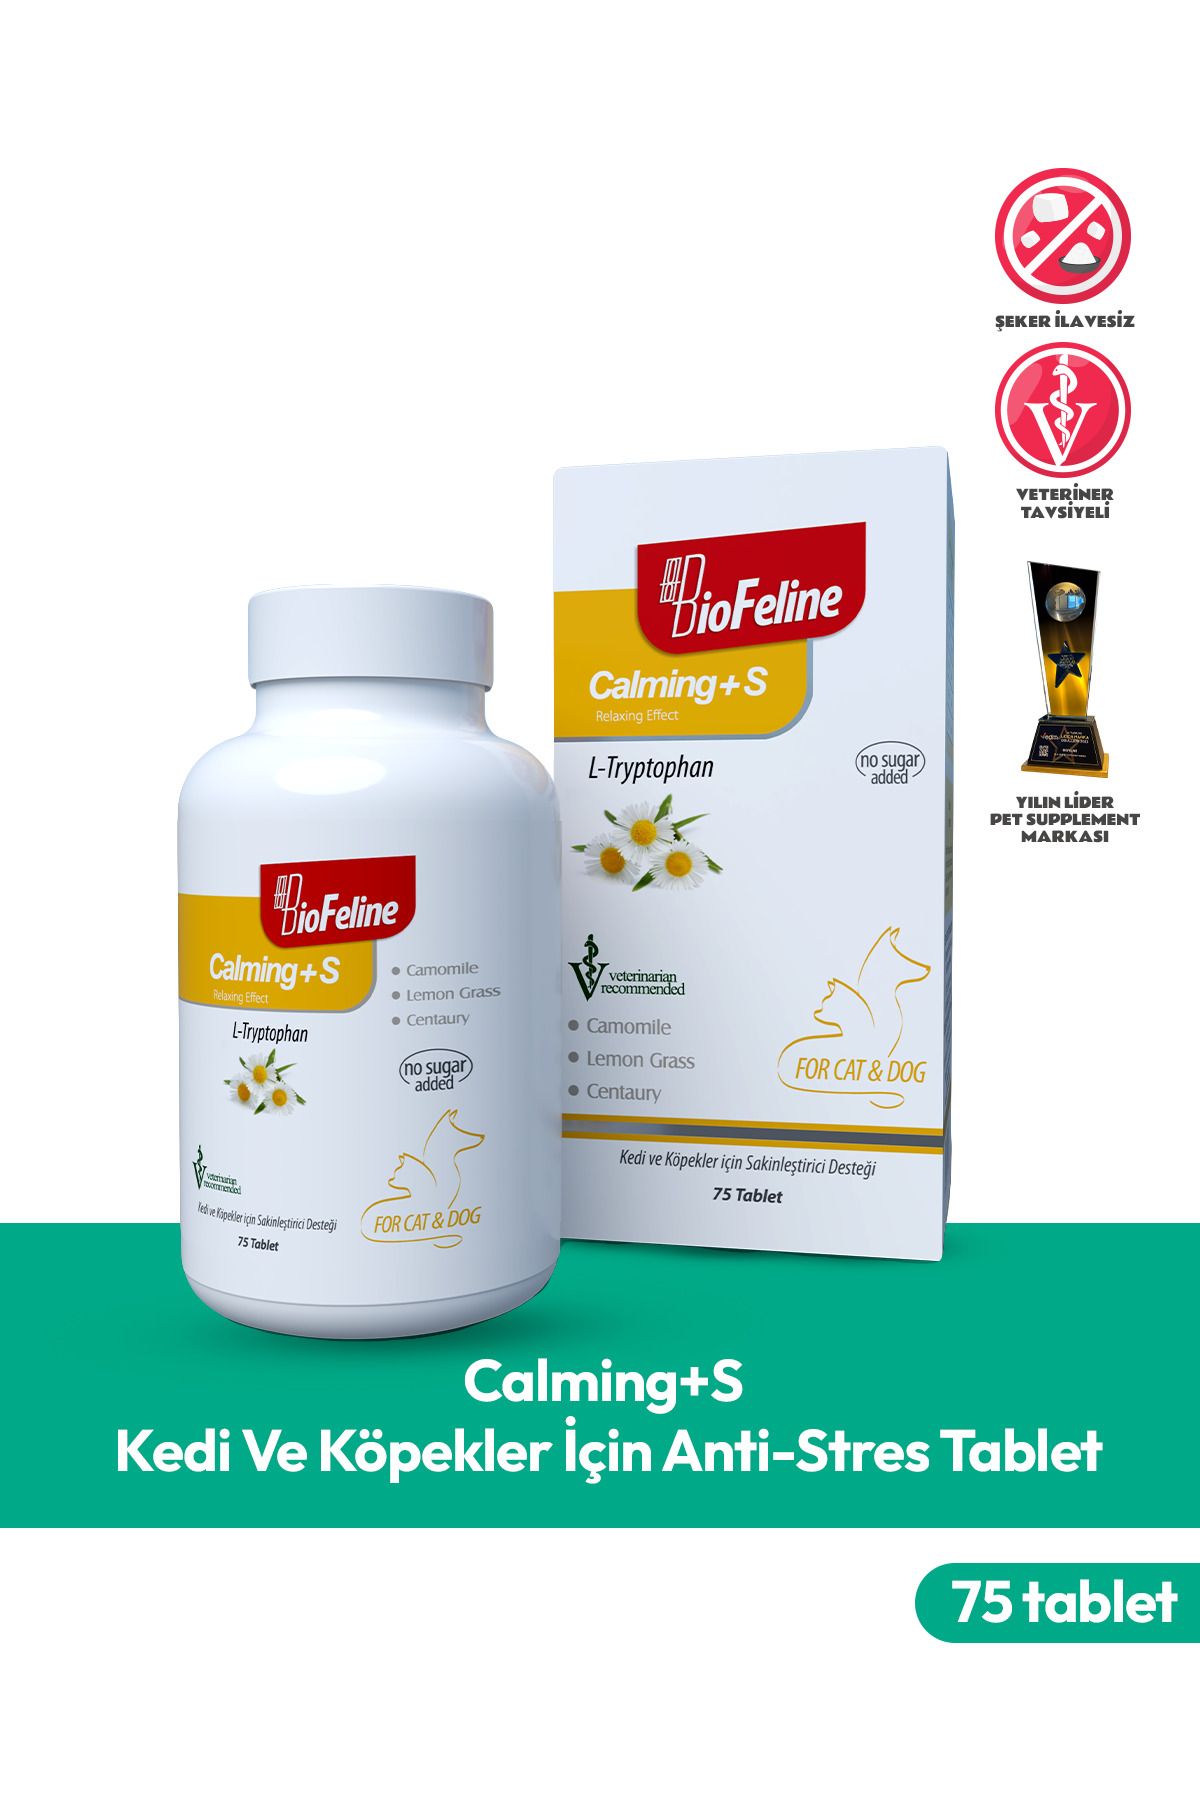 BioFeline Calming+s (kedi Ve Köpekler Için Anti-stres Tablet) 75 Tablet